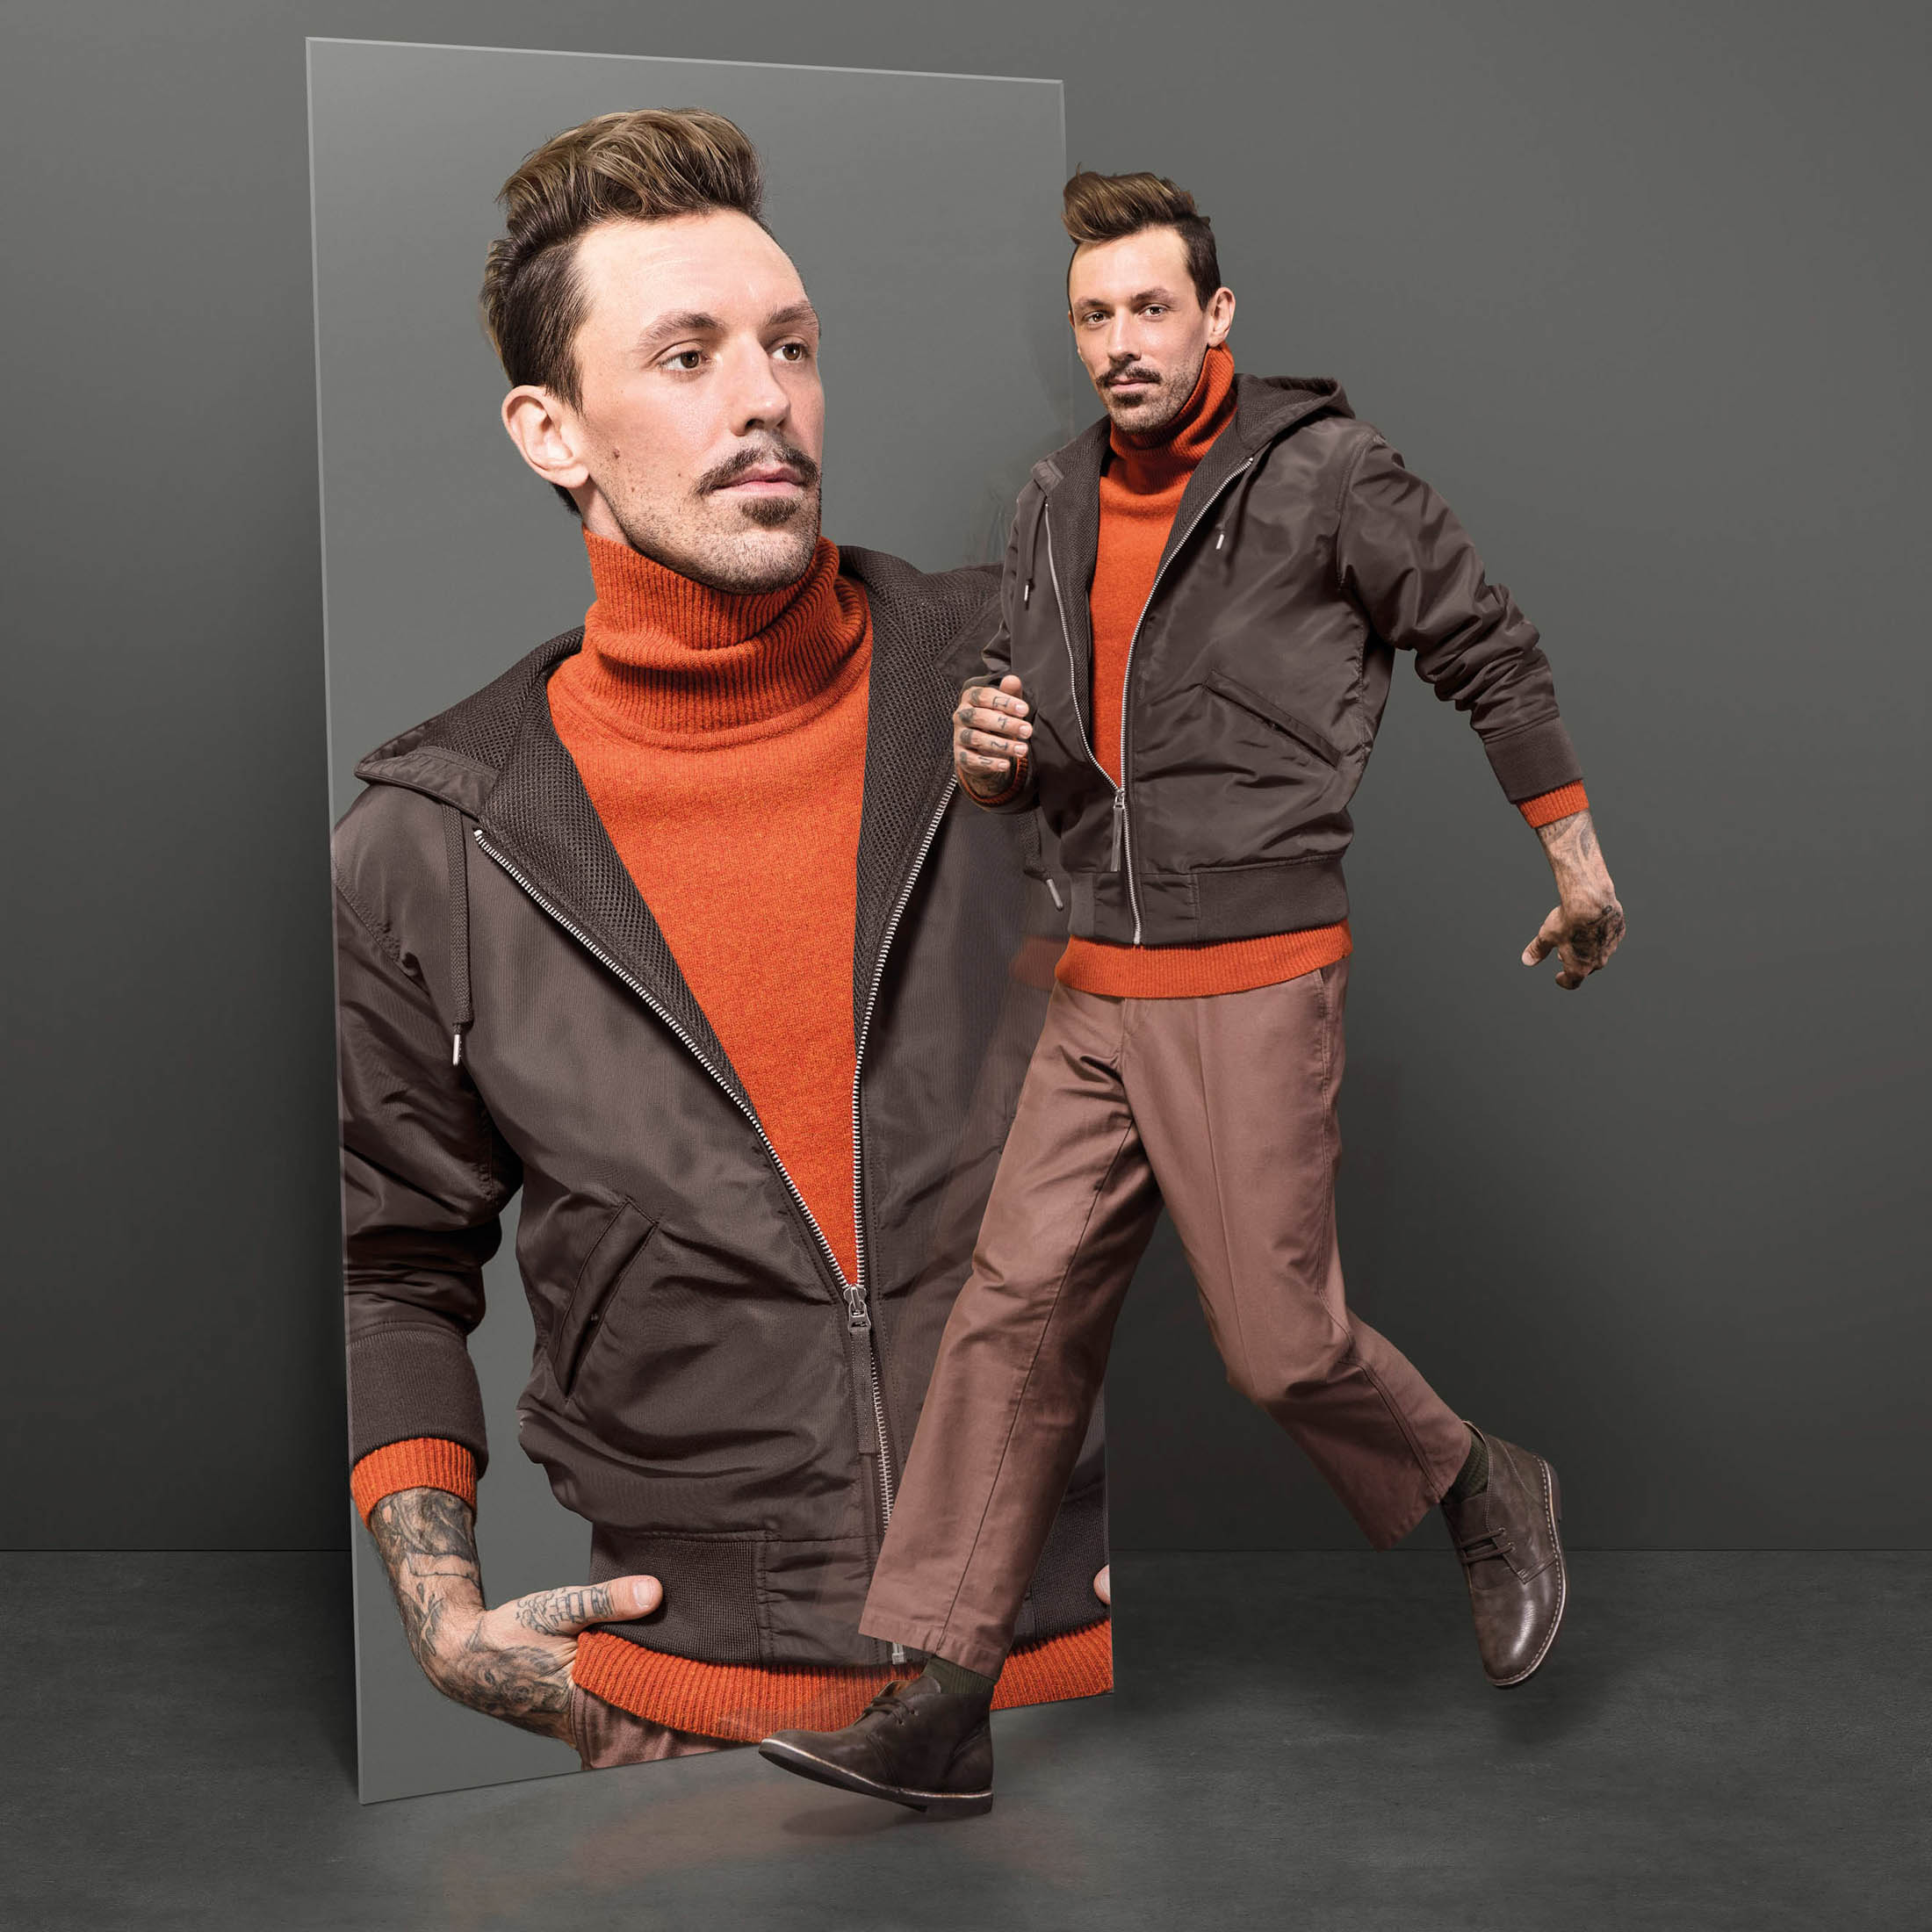 Ein Mann in einer eleganten braunen Jacke, einem orangefarbenen Pullover und einer braunen Hose ist in zwei Posen zu sehen: eine in ruhiger Pose und eine andere mitten in der Bewegung, als würde er vor einem grauen Hintergrund rennen. © Fotografie Tomas Rodriguez